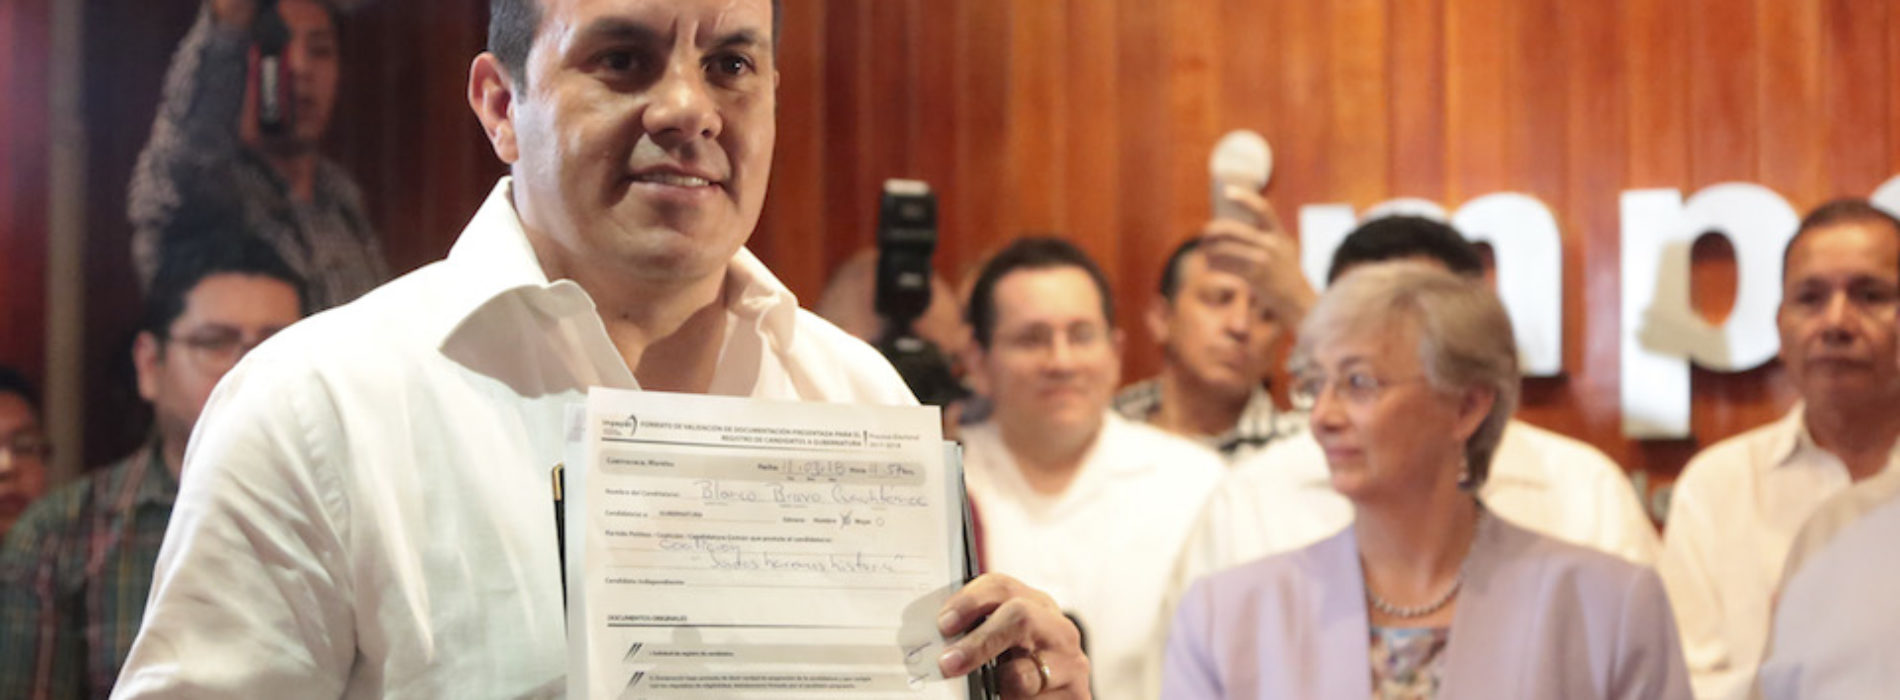 Verificado.mx: ¿Está en riesgo la candidatura de Cuauhtémoc
Blanco?